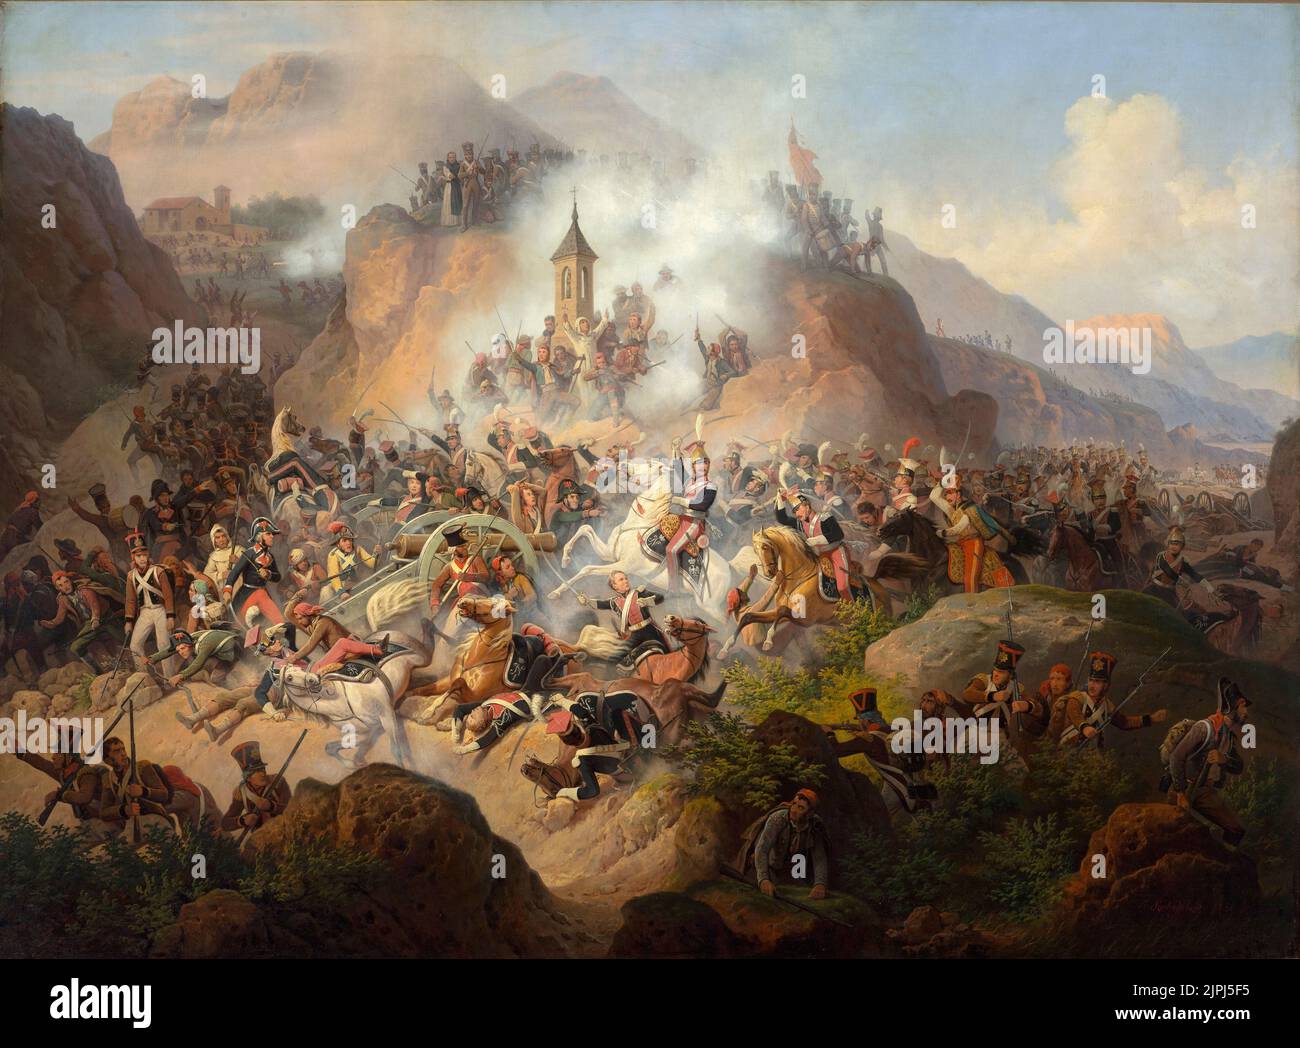 Bataille de Somosierra cavalerie polonaise à la bataille de Somosierra en Espagne, 1808, peinture de janvier Suchodolski Banque D'Images